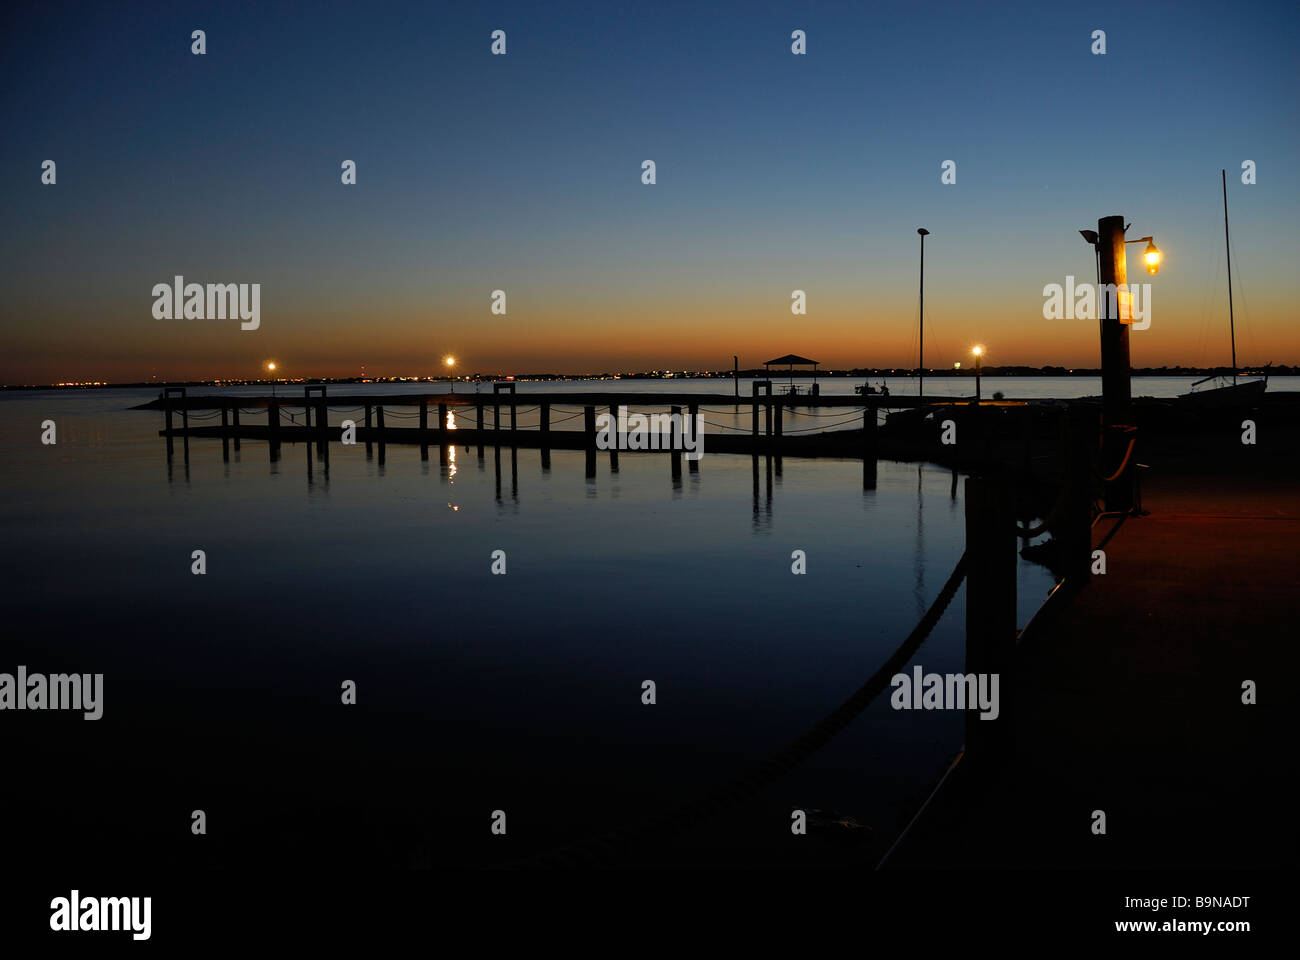 La luce del giorno dando modo al cielo notturno in un molo di pesca sul lago Foto Stock